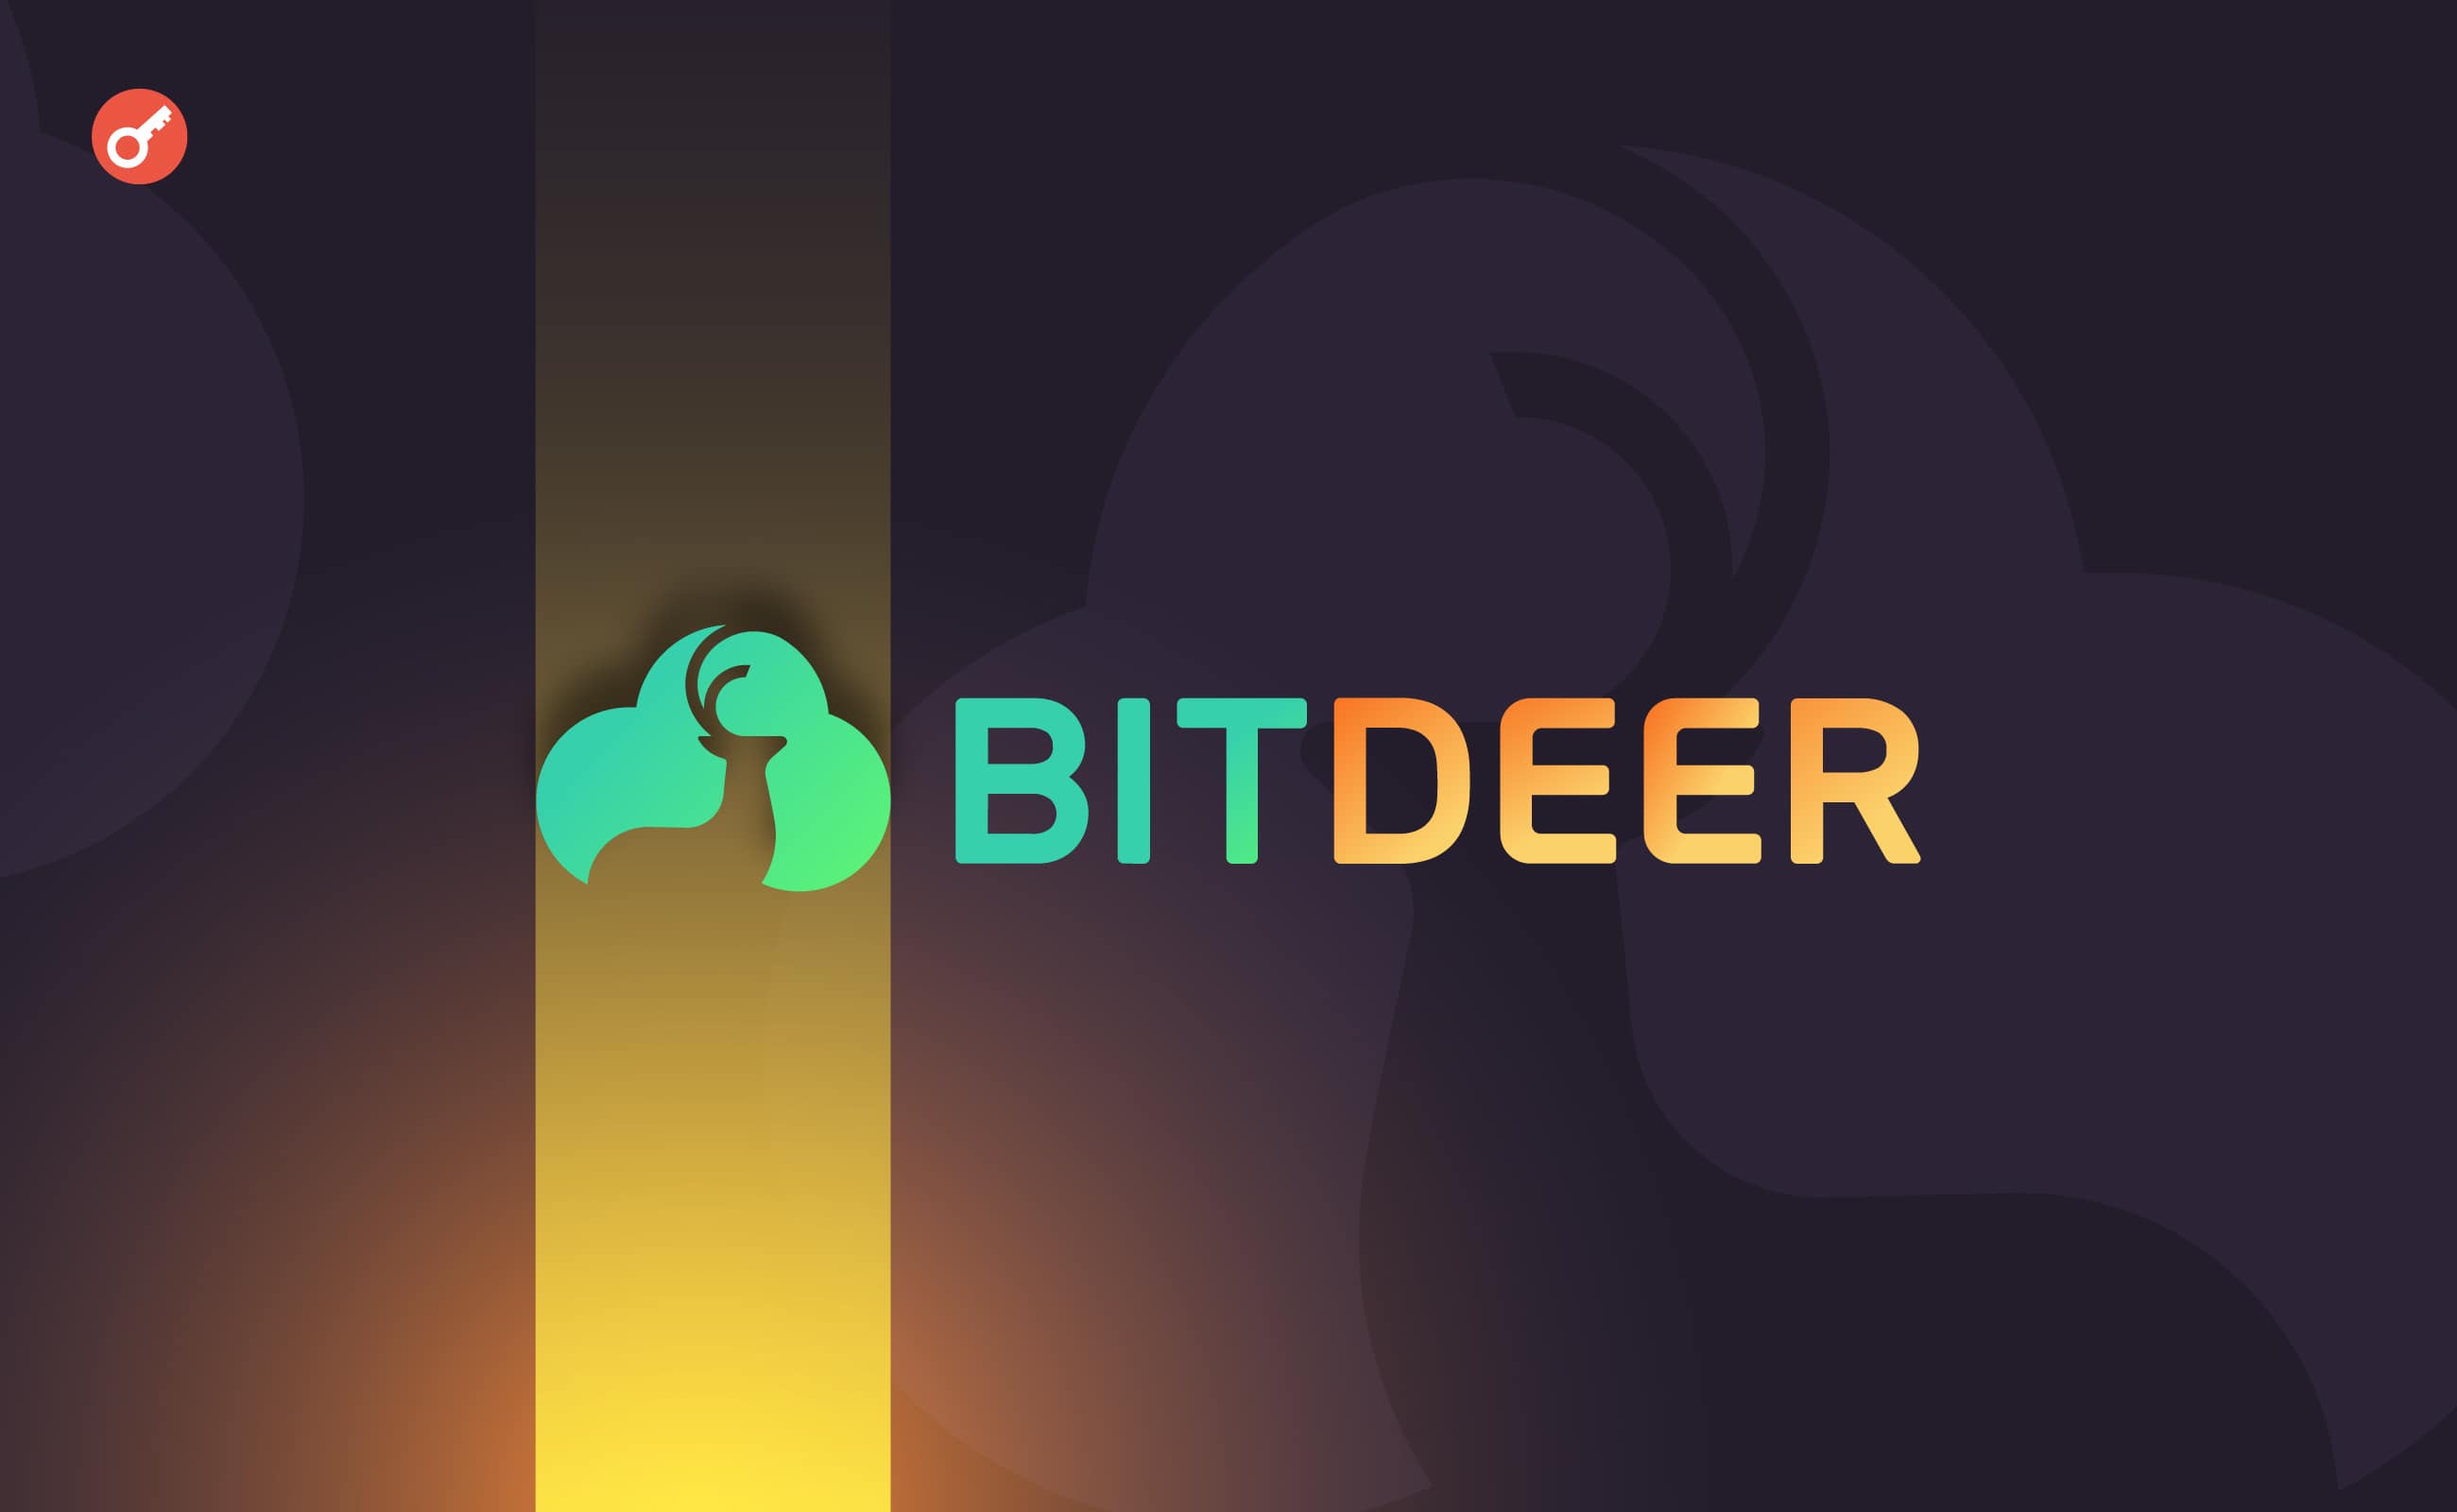 ЗМІ: біткоїн-майнер Bitdeer планує залучити $100 млн інвестицій. Головний колаж новини.